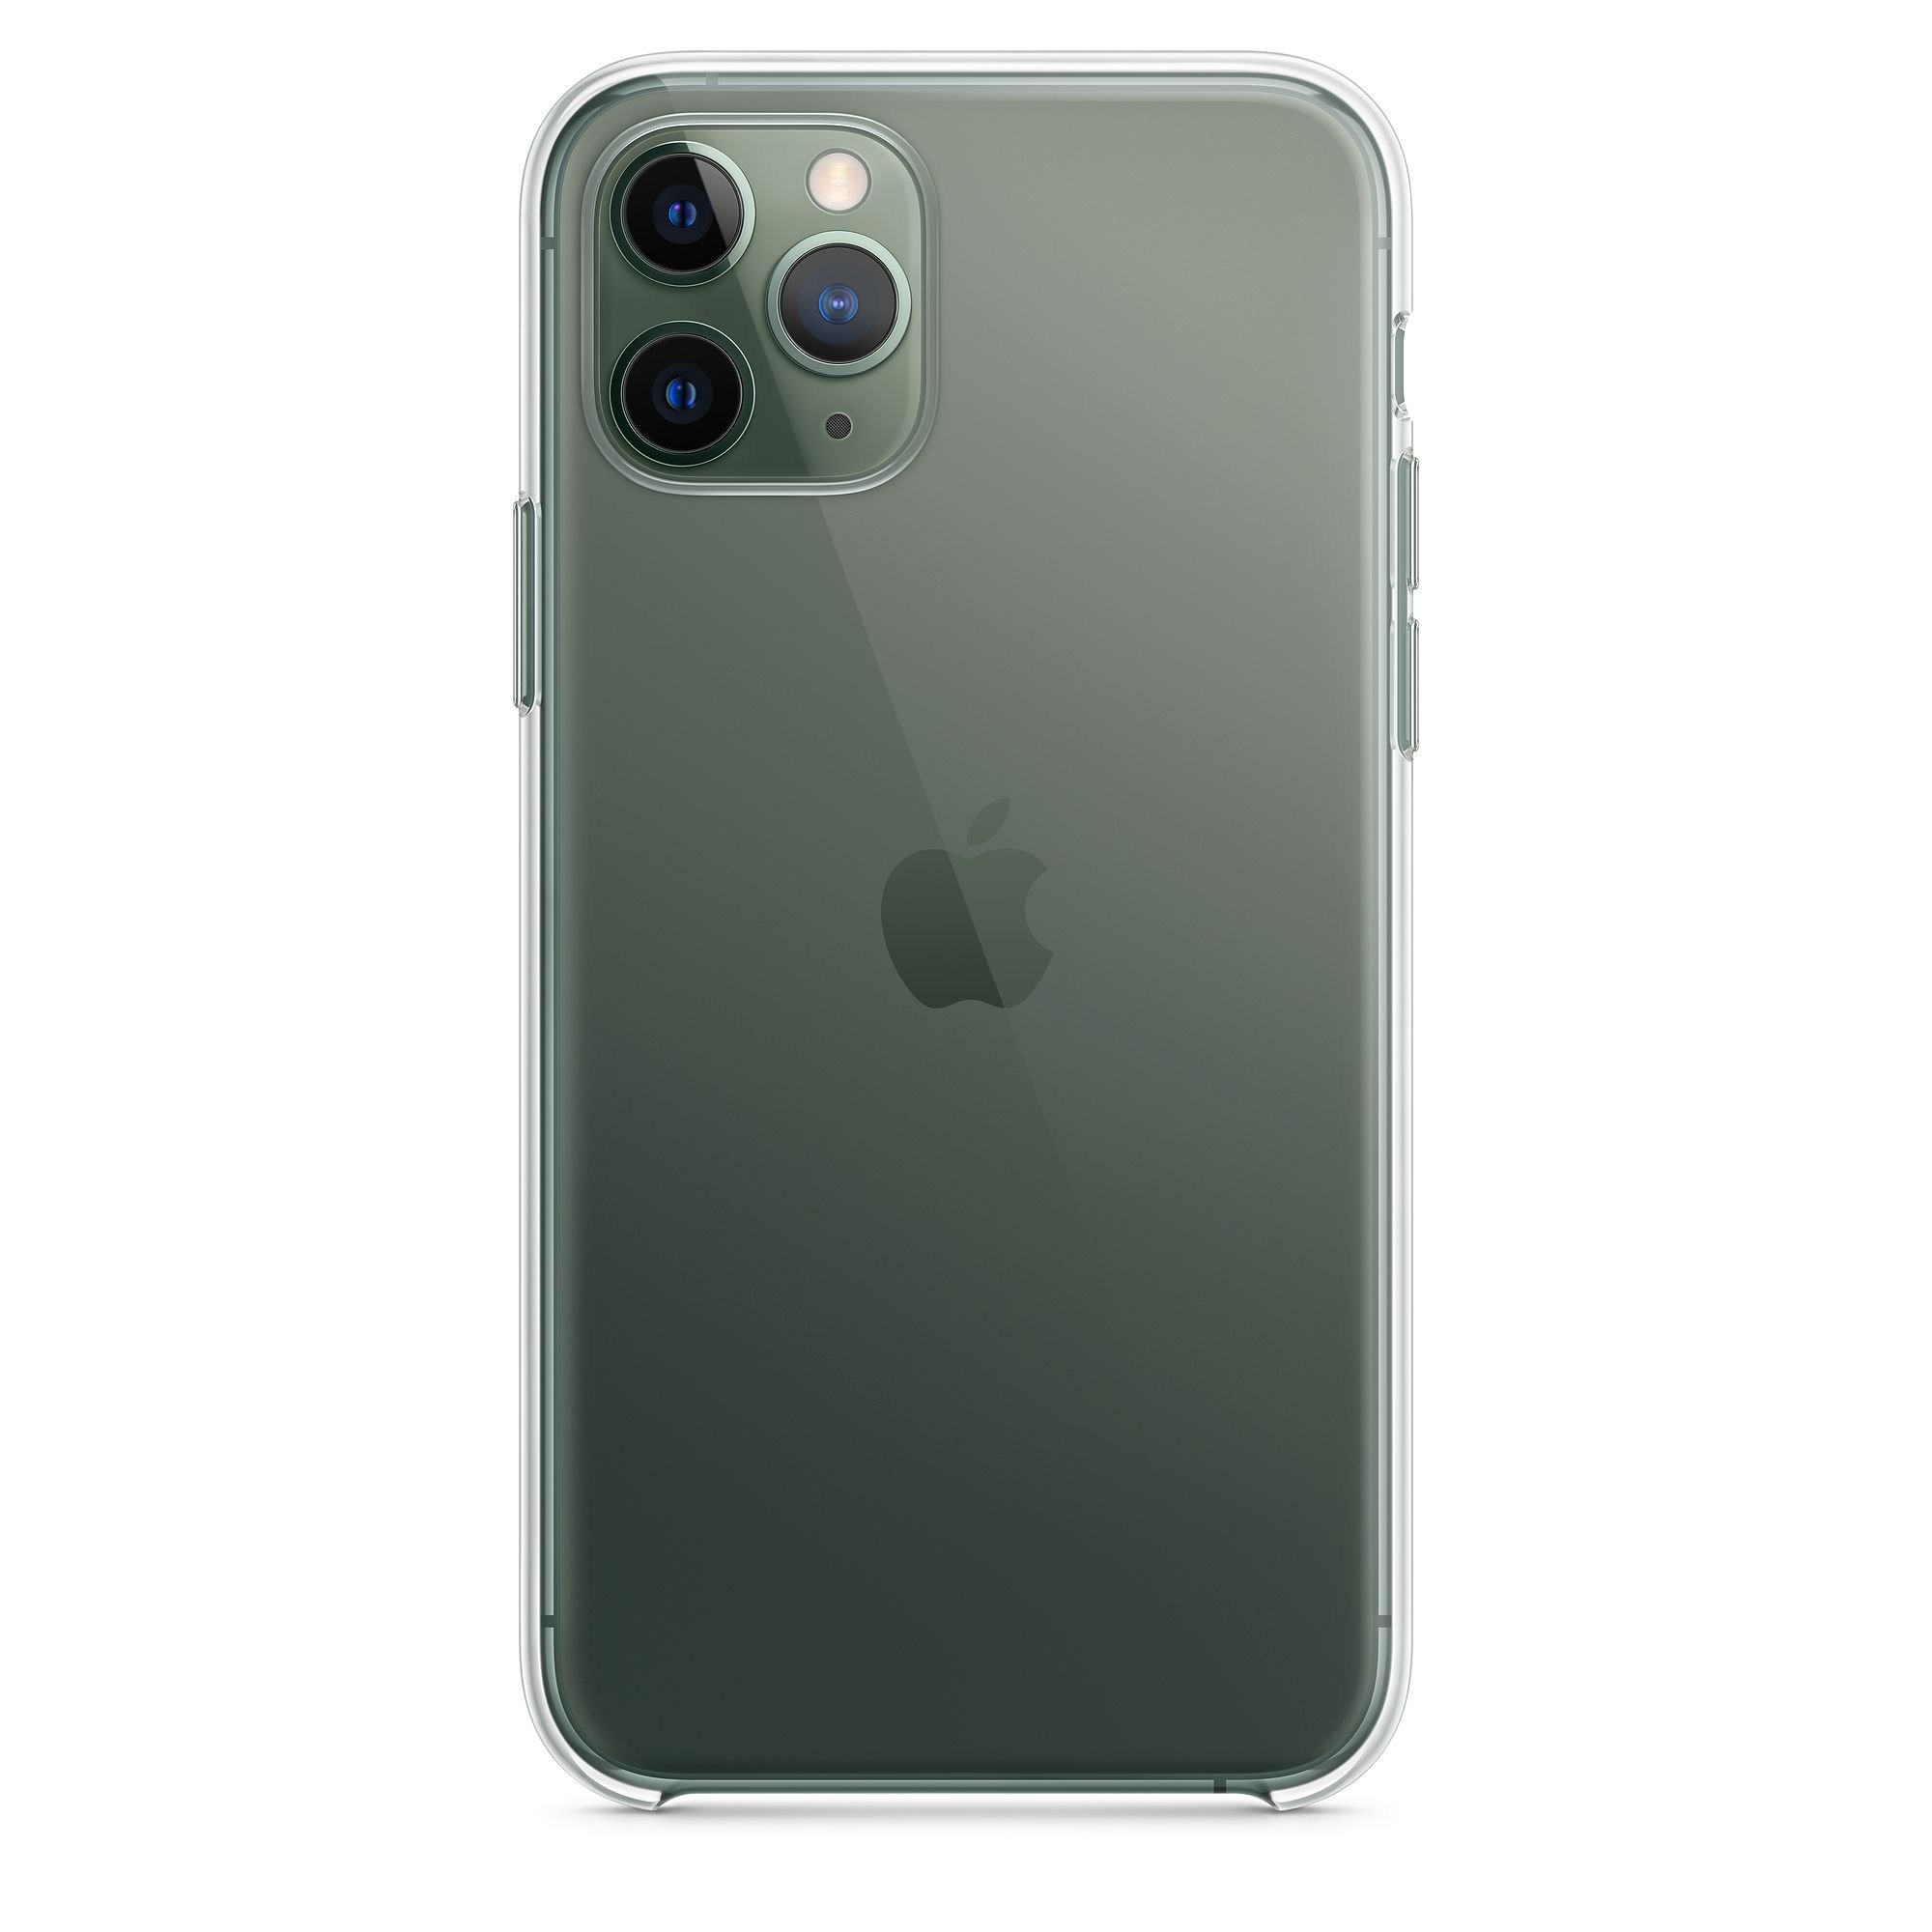 Ốp lưng nhựa dẻo iPhone 11/11 Pro - Bảo vệ điện thoại của bạn một cách an toàn và độc đáo với ốp lưng nhựa dẻo iPhone 11/11 Pro. Thiết kế nhỏ gọn và năng động cho phong cách cá nhân của bạn. Khám phá ngay hình ảnh chi tiết.